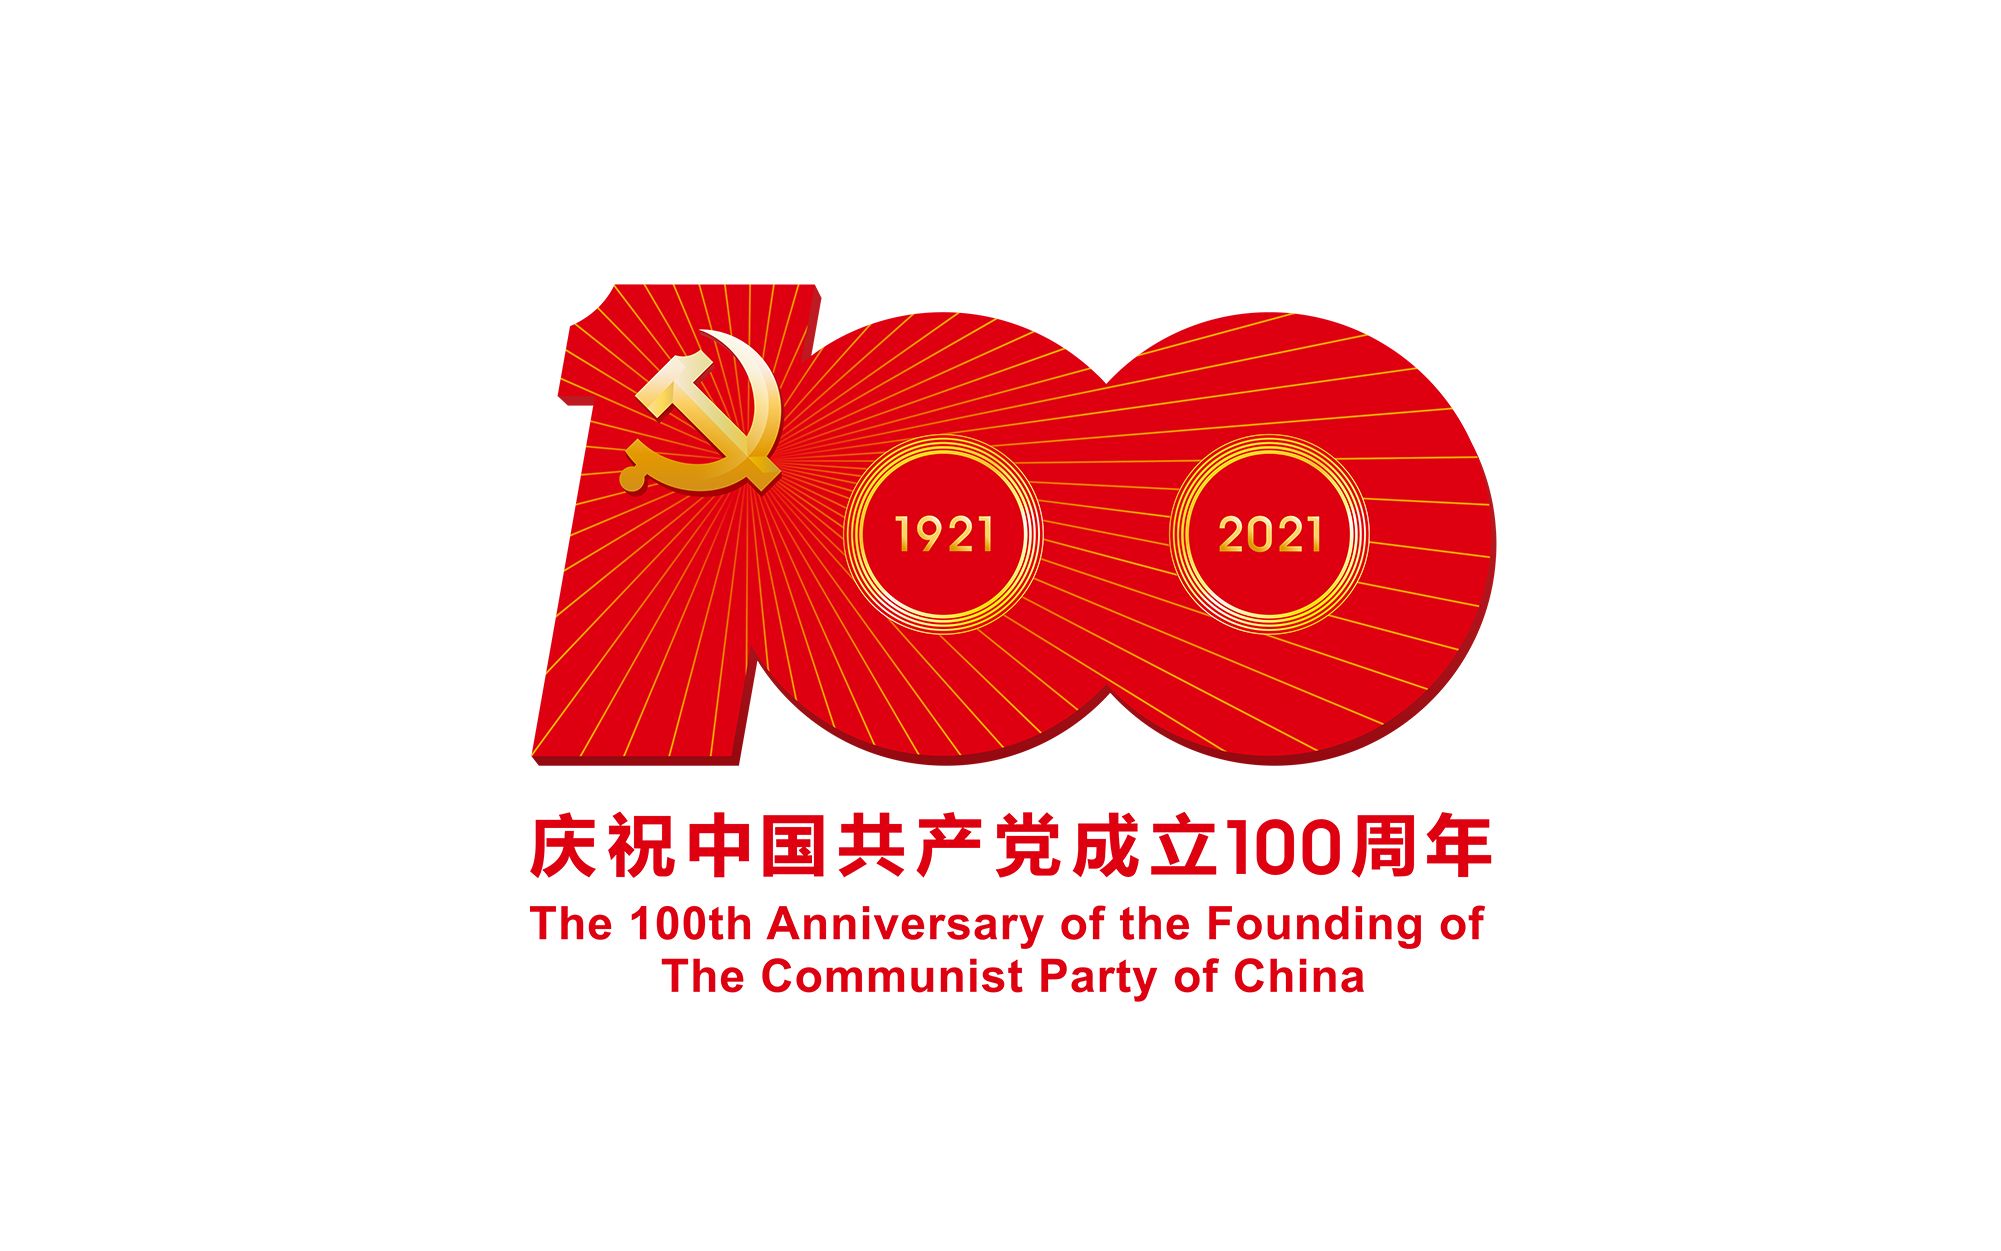 【全程回顾】中国共产党成立100周年庆祝大会 + 文艺演出